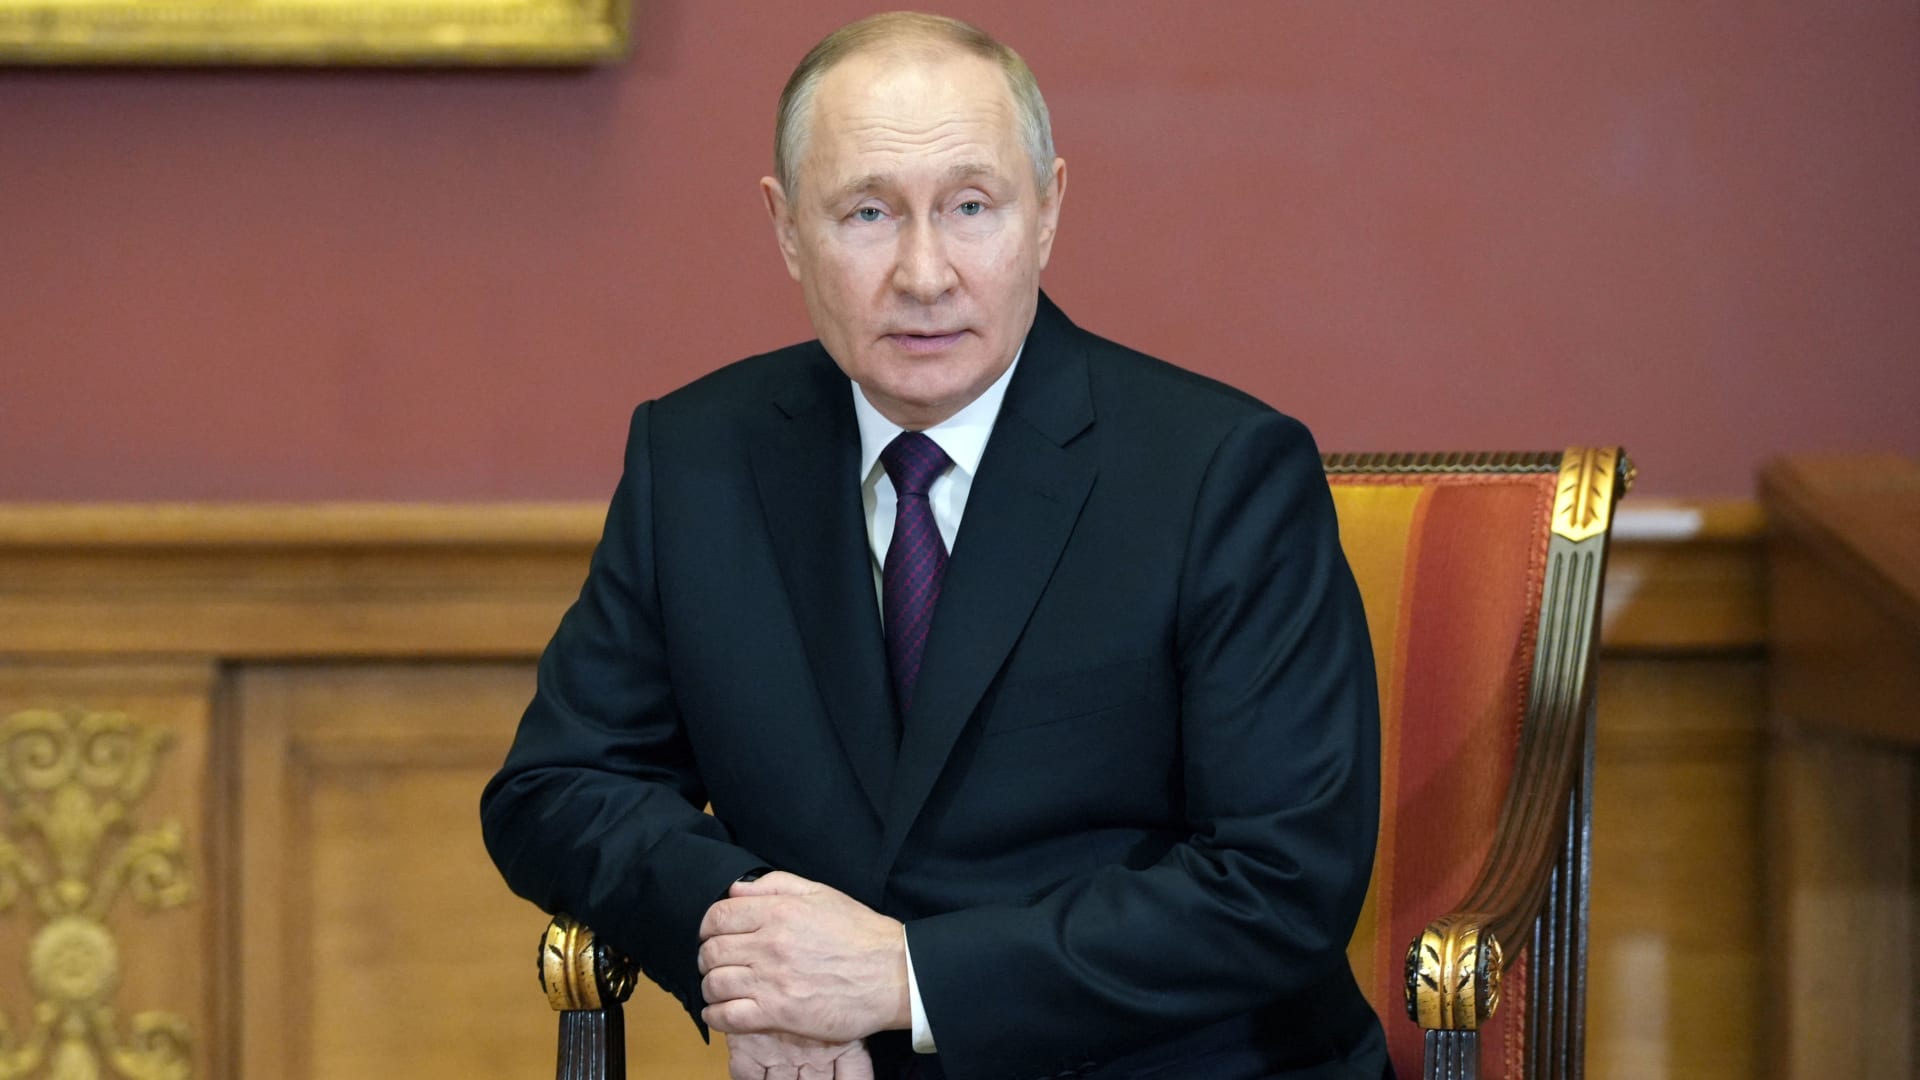 بوتين يلغي مؤتمره الصحفي السنوي لأول مرة منذ 2013.. ما دلالة ذلك؟